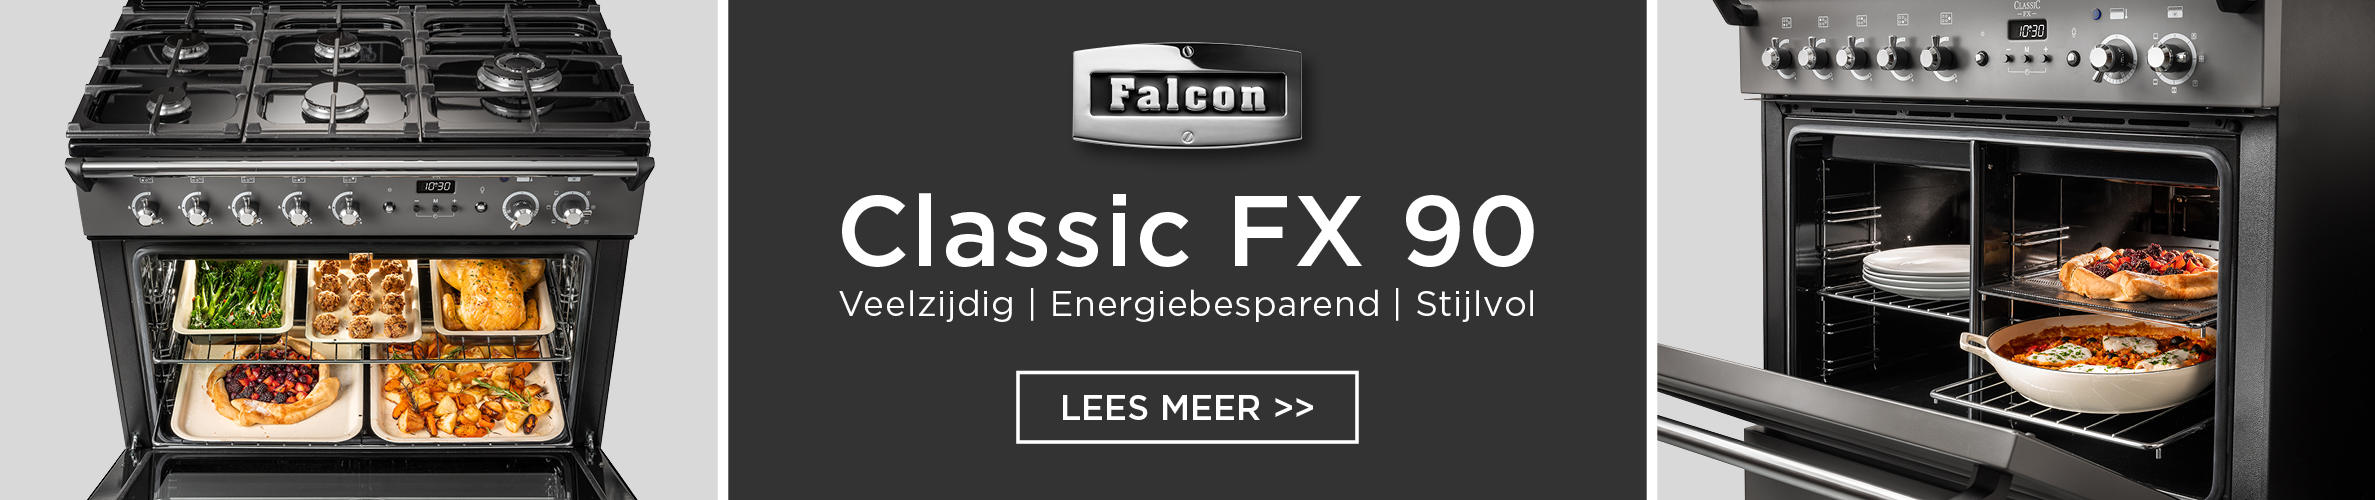 Falcon Classic FX 90